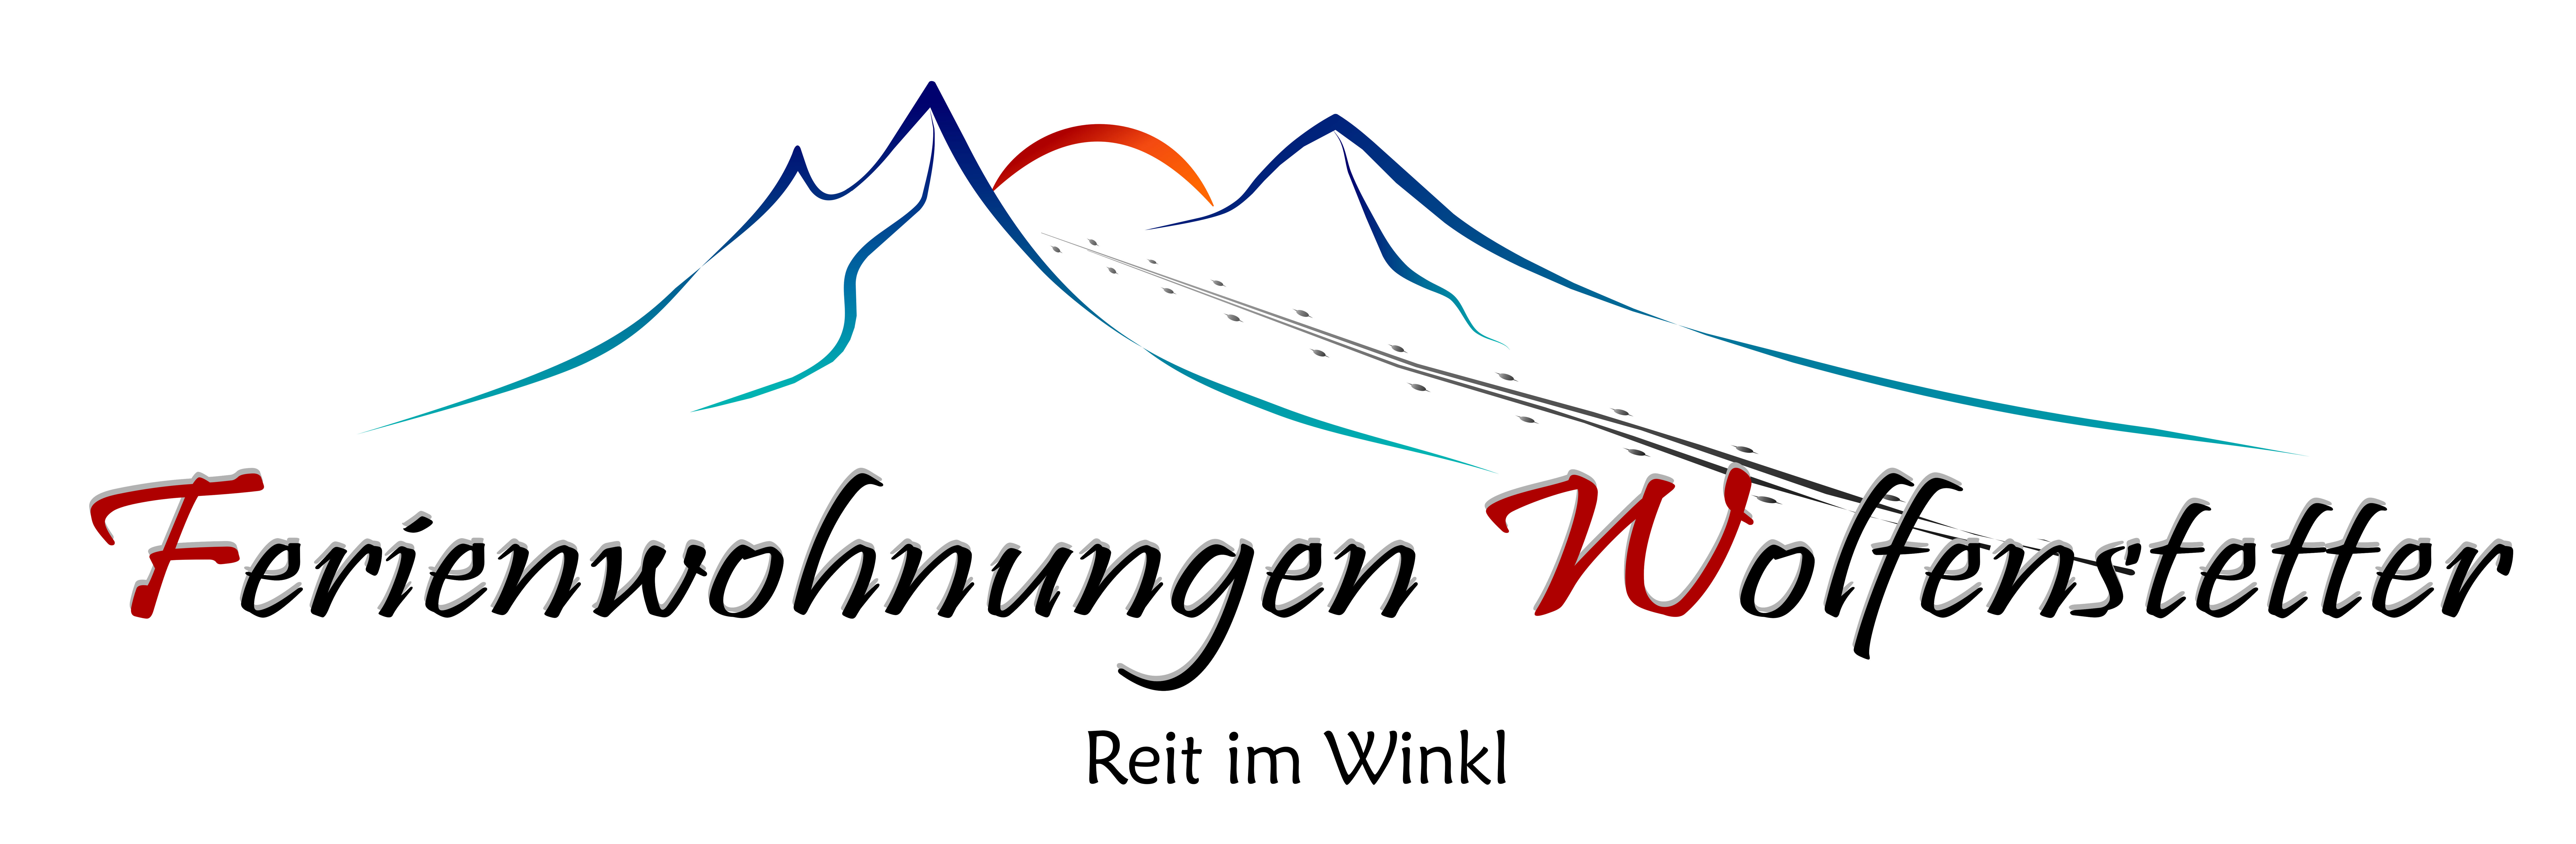 Logo Ferienwohnungen Wolfenstetter (c) Hannes Heigenhauser - Mount Inspire Storytelling und Online Marketing